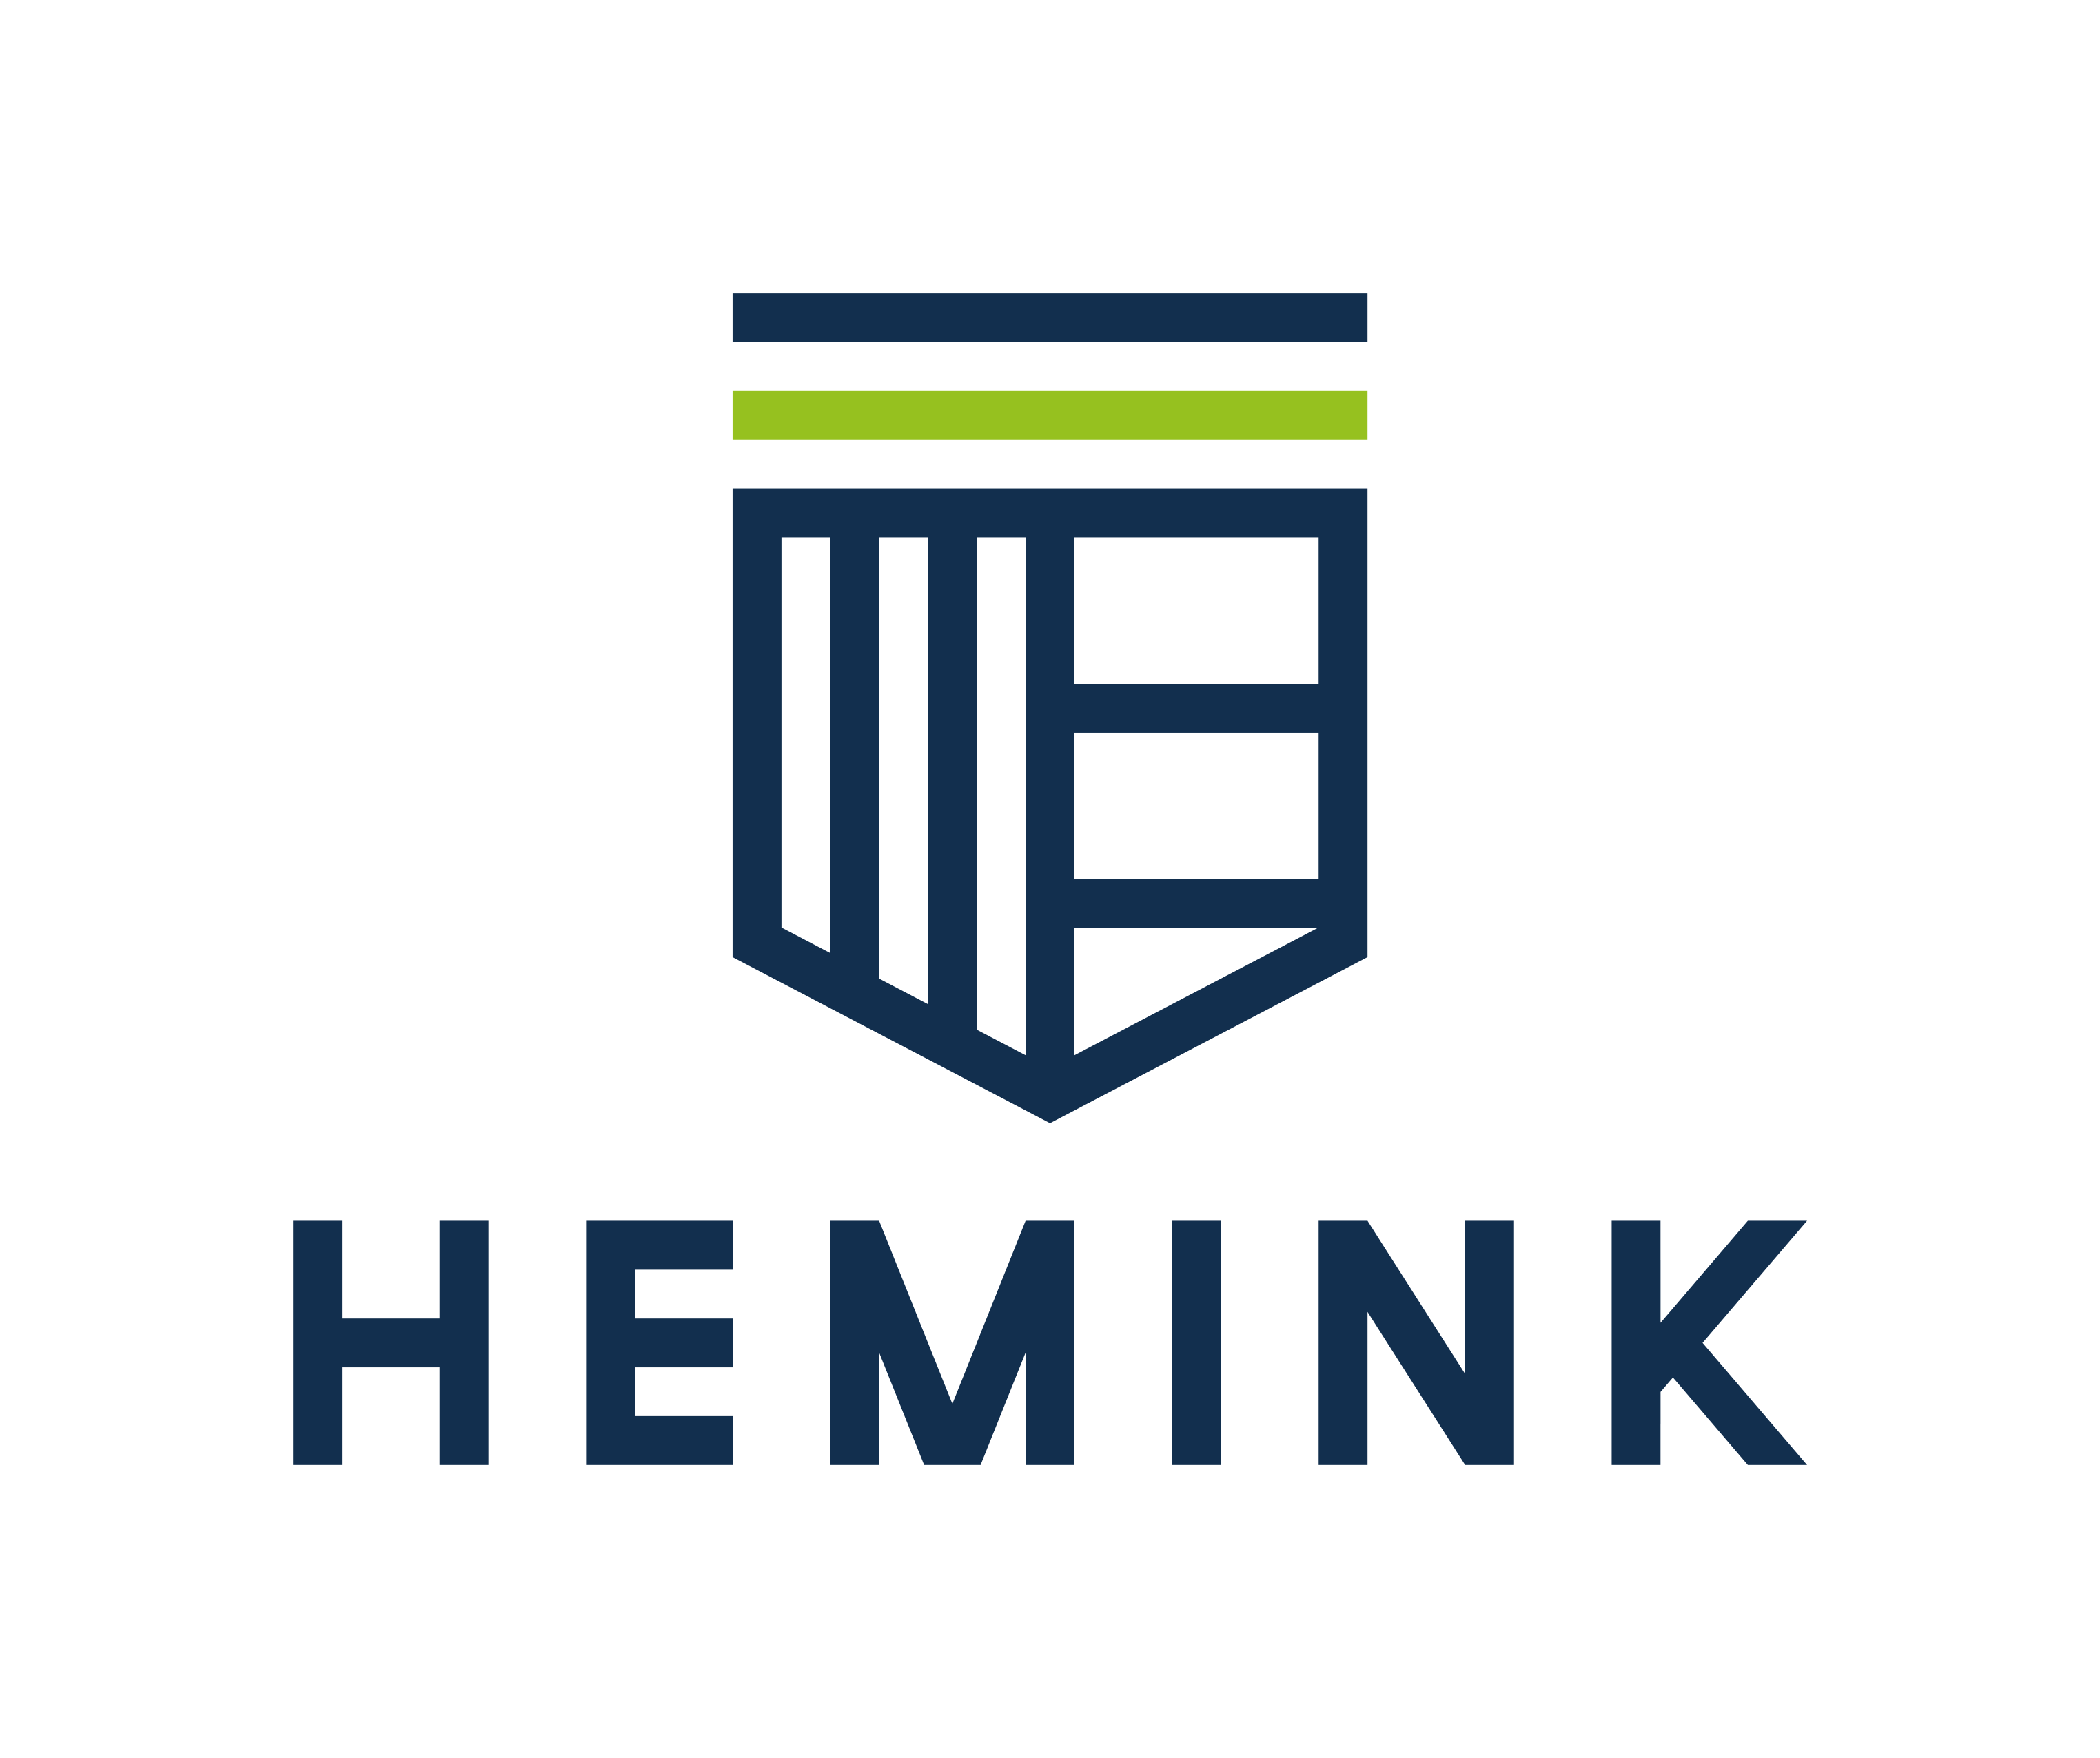 https://www.opstaanenopvallen.nl/sitedata/wp-content/uploads/Hemink_logo_A_RGB.png